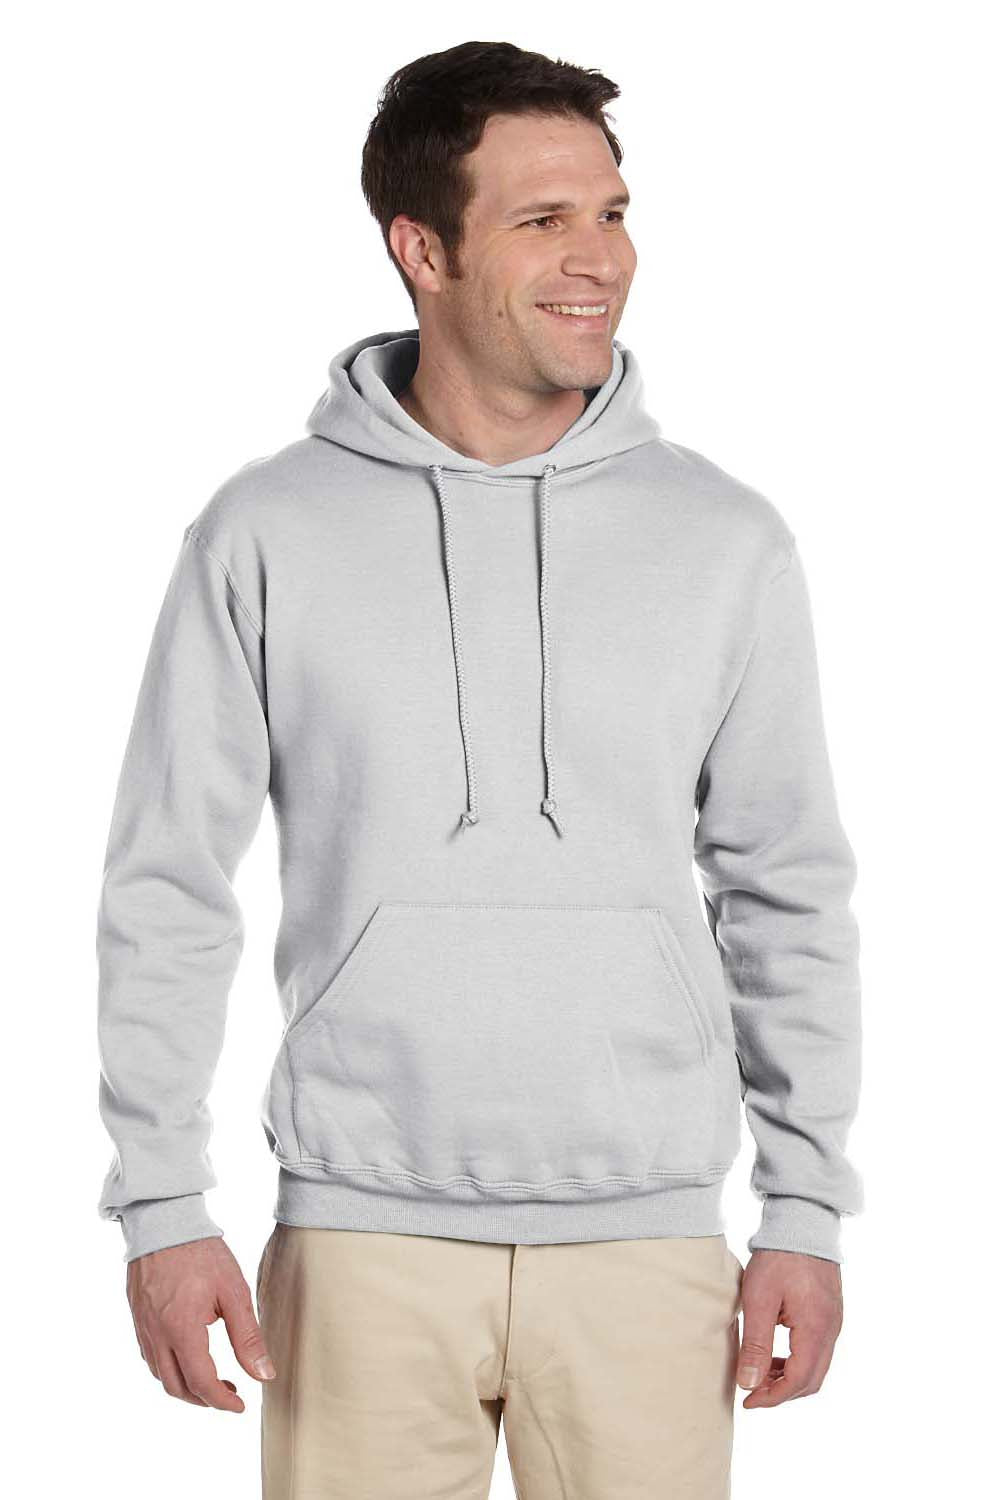 Jerzees 4997 Mens Super Sweats NuBlend Fleece Hooded Sweatshirt Hoodie Ash Grey Front